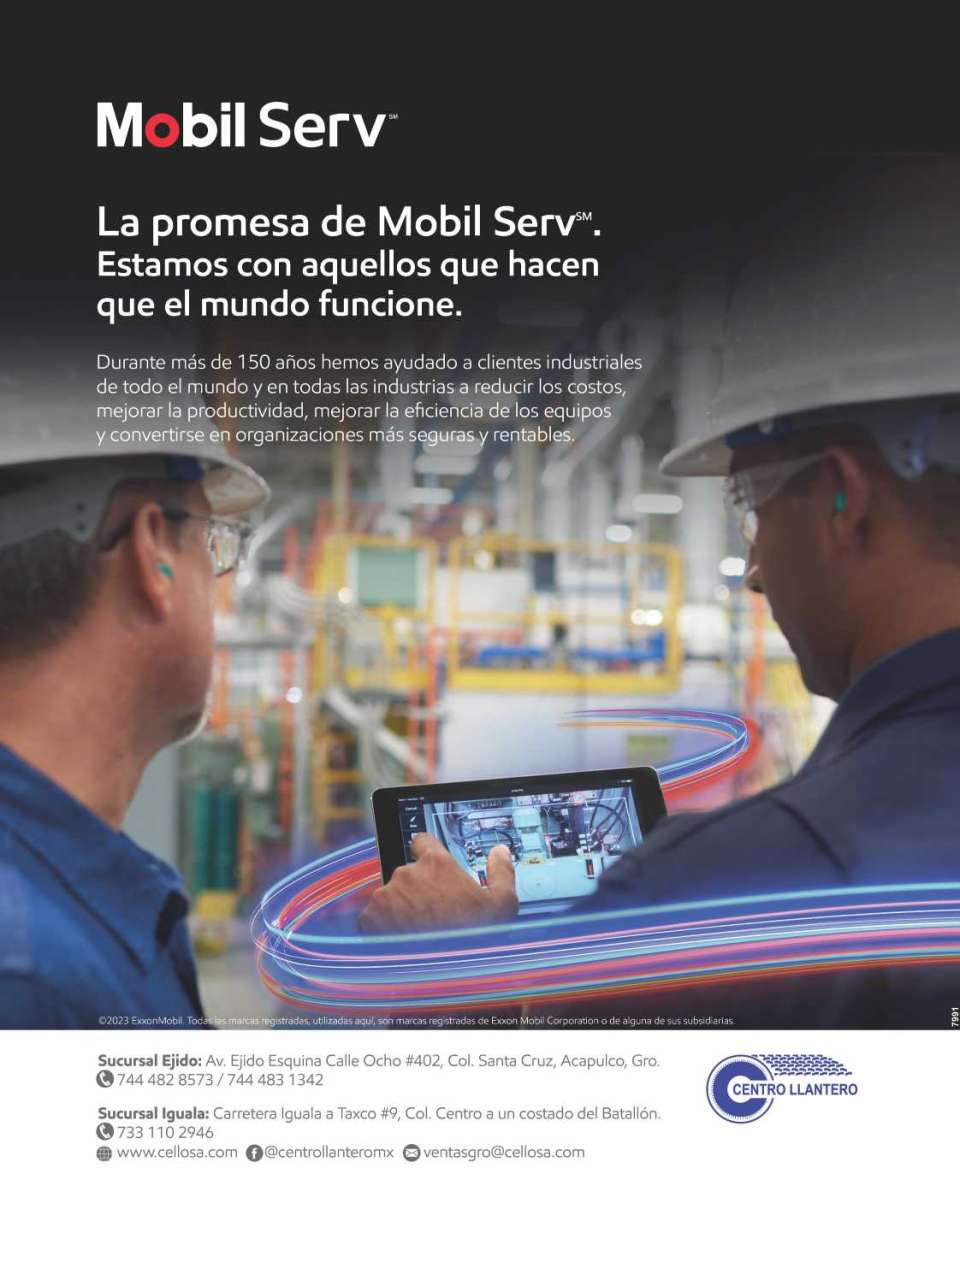 Lubricantes Mobil Serv. Lubricantes Industriales, para Equipo Pesado y Automotrices. Expertos en sistemas de lubricacion y monitoreo.